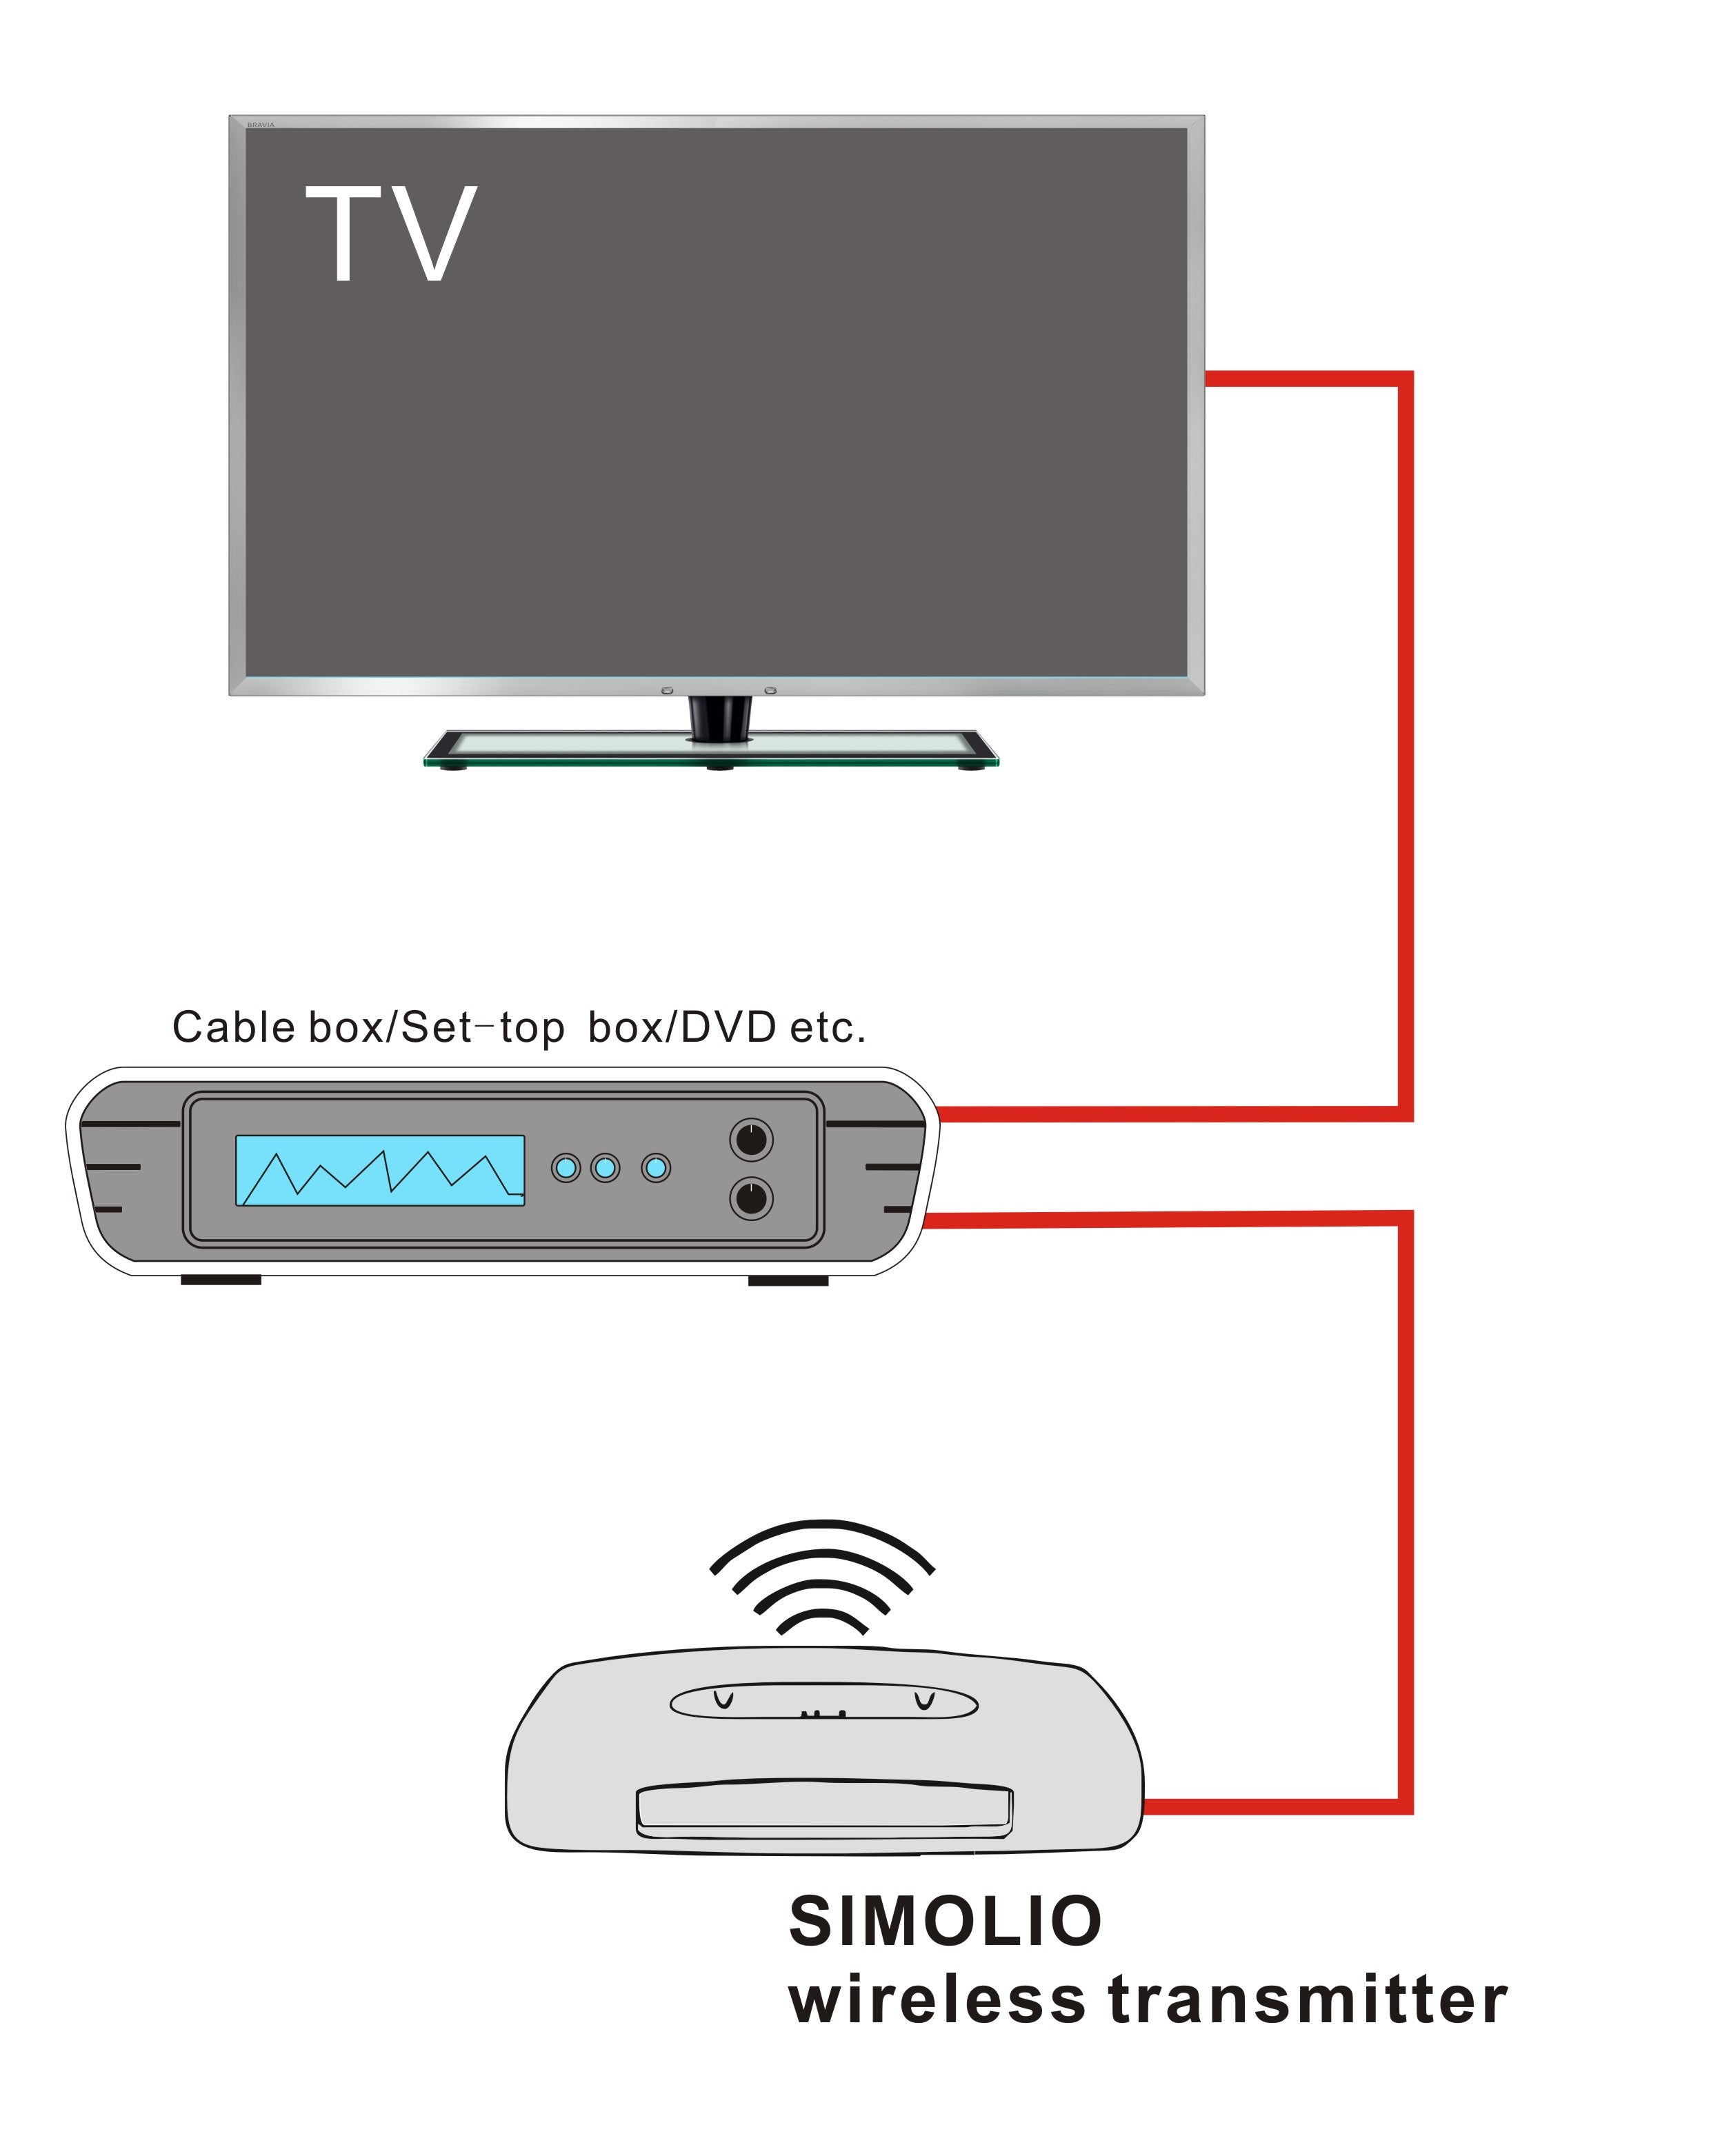 SIMOLIO wireless TV headphones work with DVD